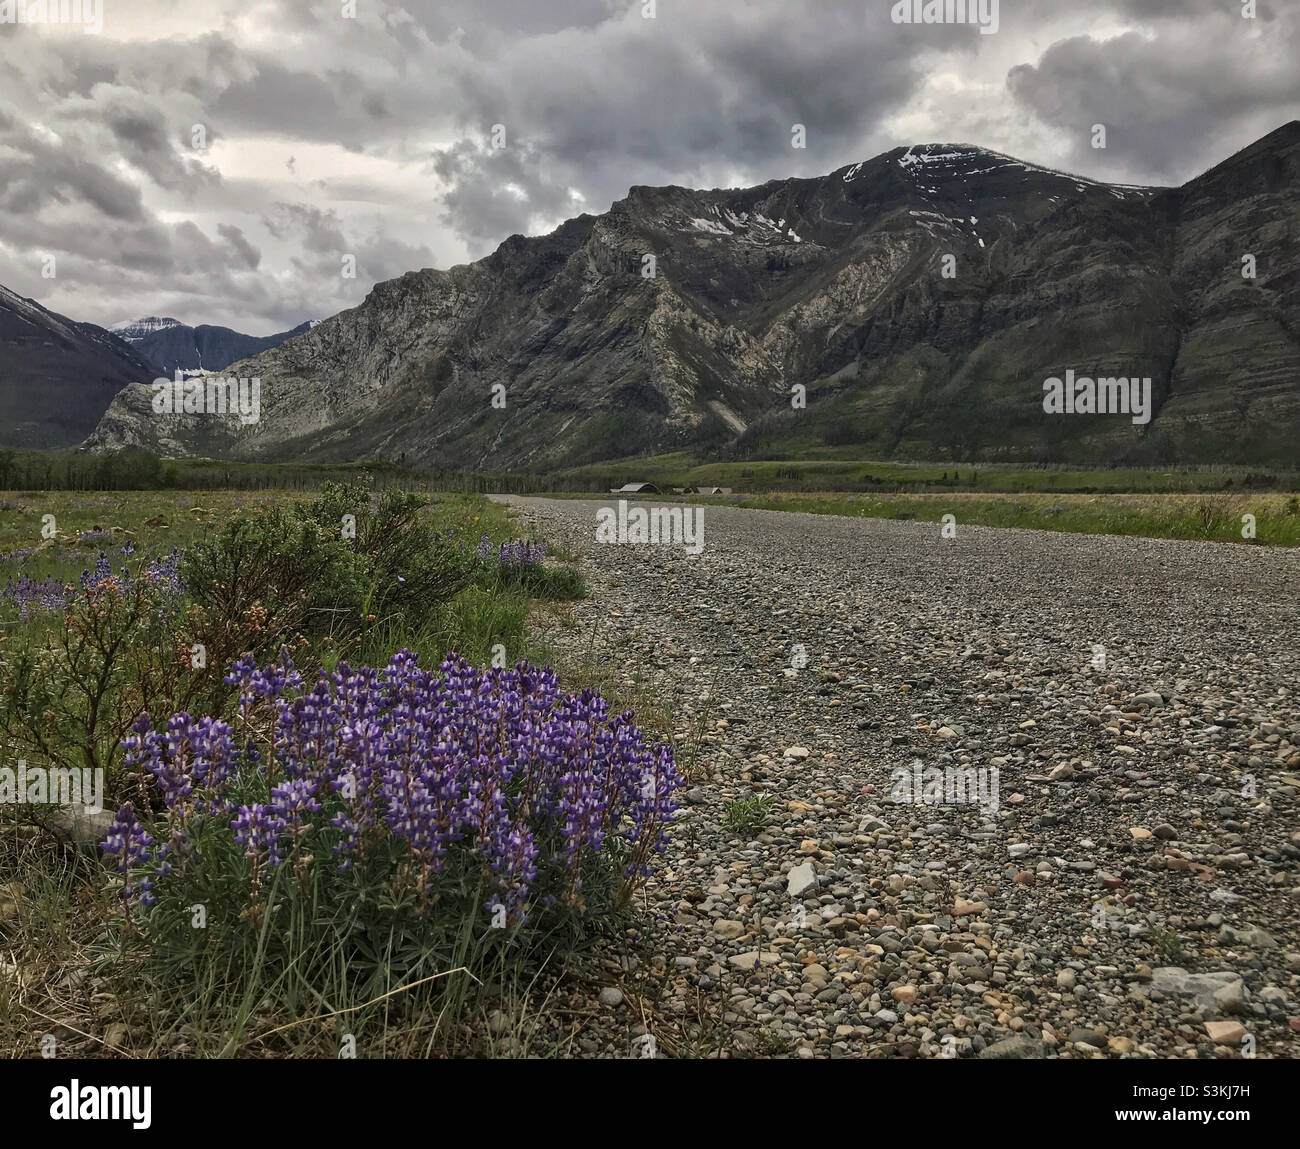 Fleurs sauvages pourpres par une route de gravier traversant une prairie alpine dans les montagnes Rocheuses canadiennes.Parc national des Lacs-Waterton, Alberta, Canada, un jour d'été nuageux. Banque D'Images